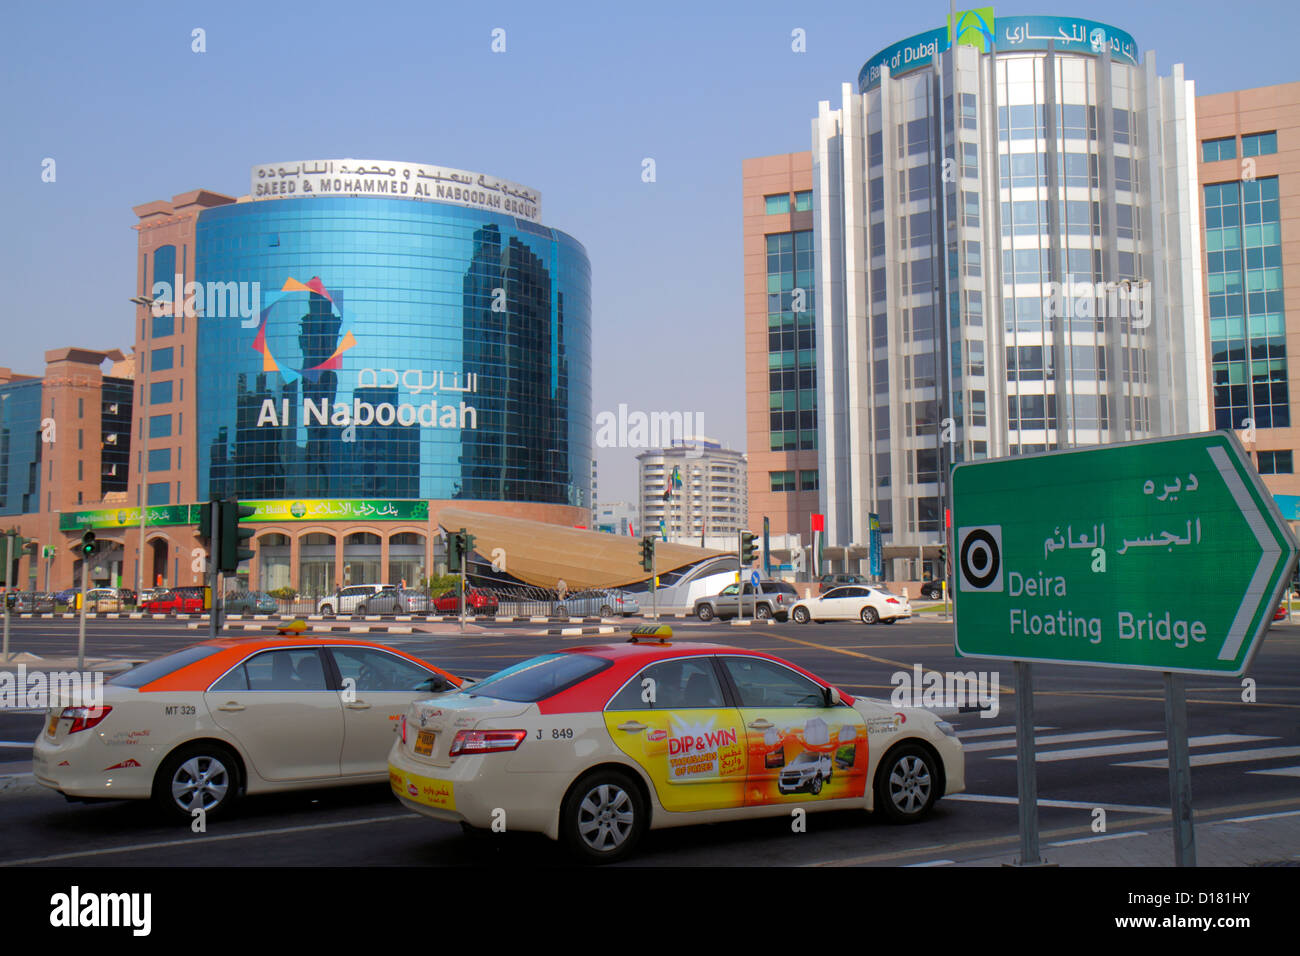 Dubai eau,Emirats Arabes Unis,Deira,Al Ithihad Road,trafic,bâtiments,ville Skyline,Al Naboodah Group,commercial Bank of Dubai,Anglais,arabe,langue Banque D'Images